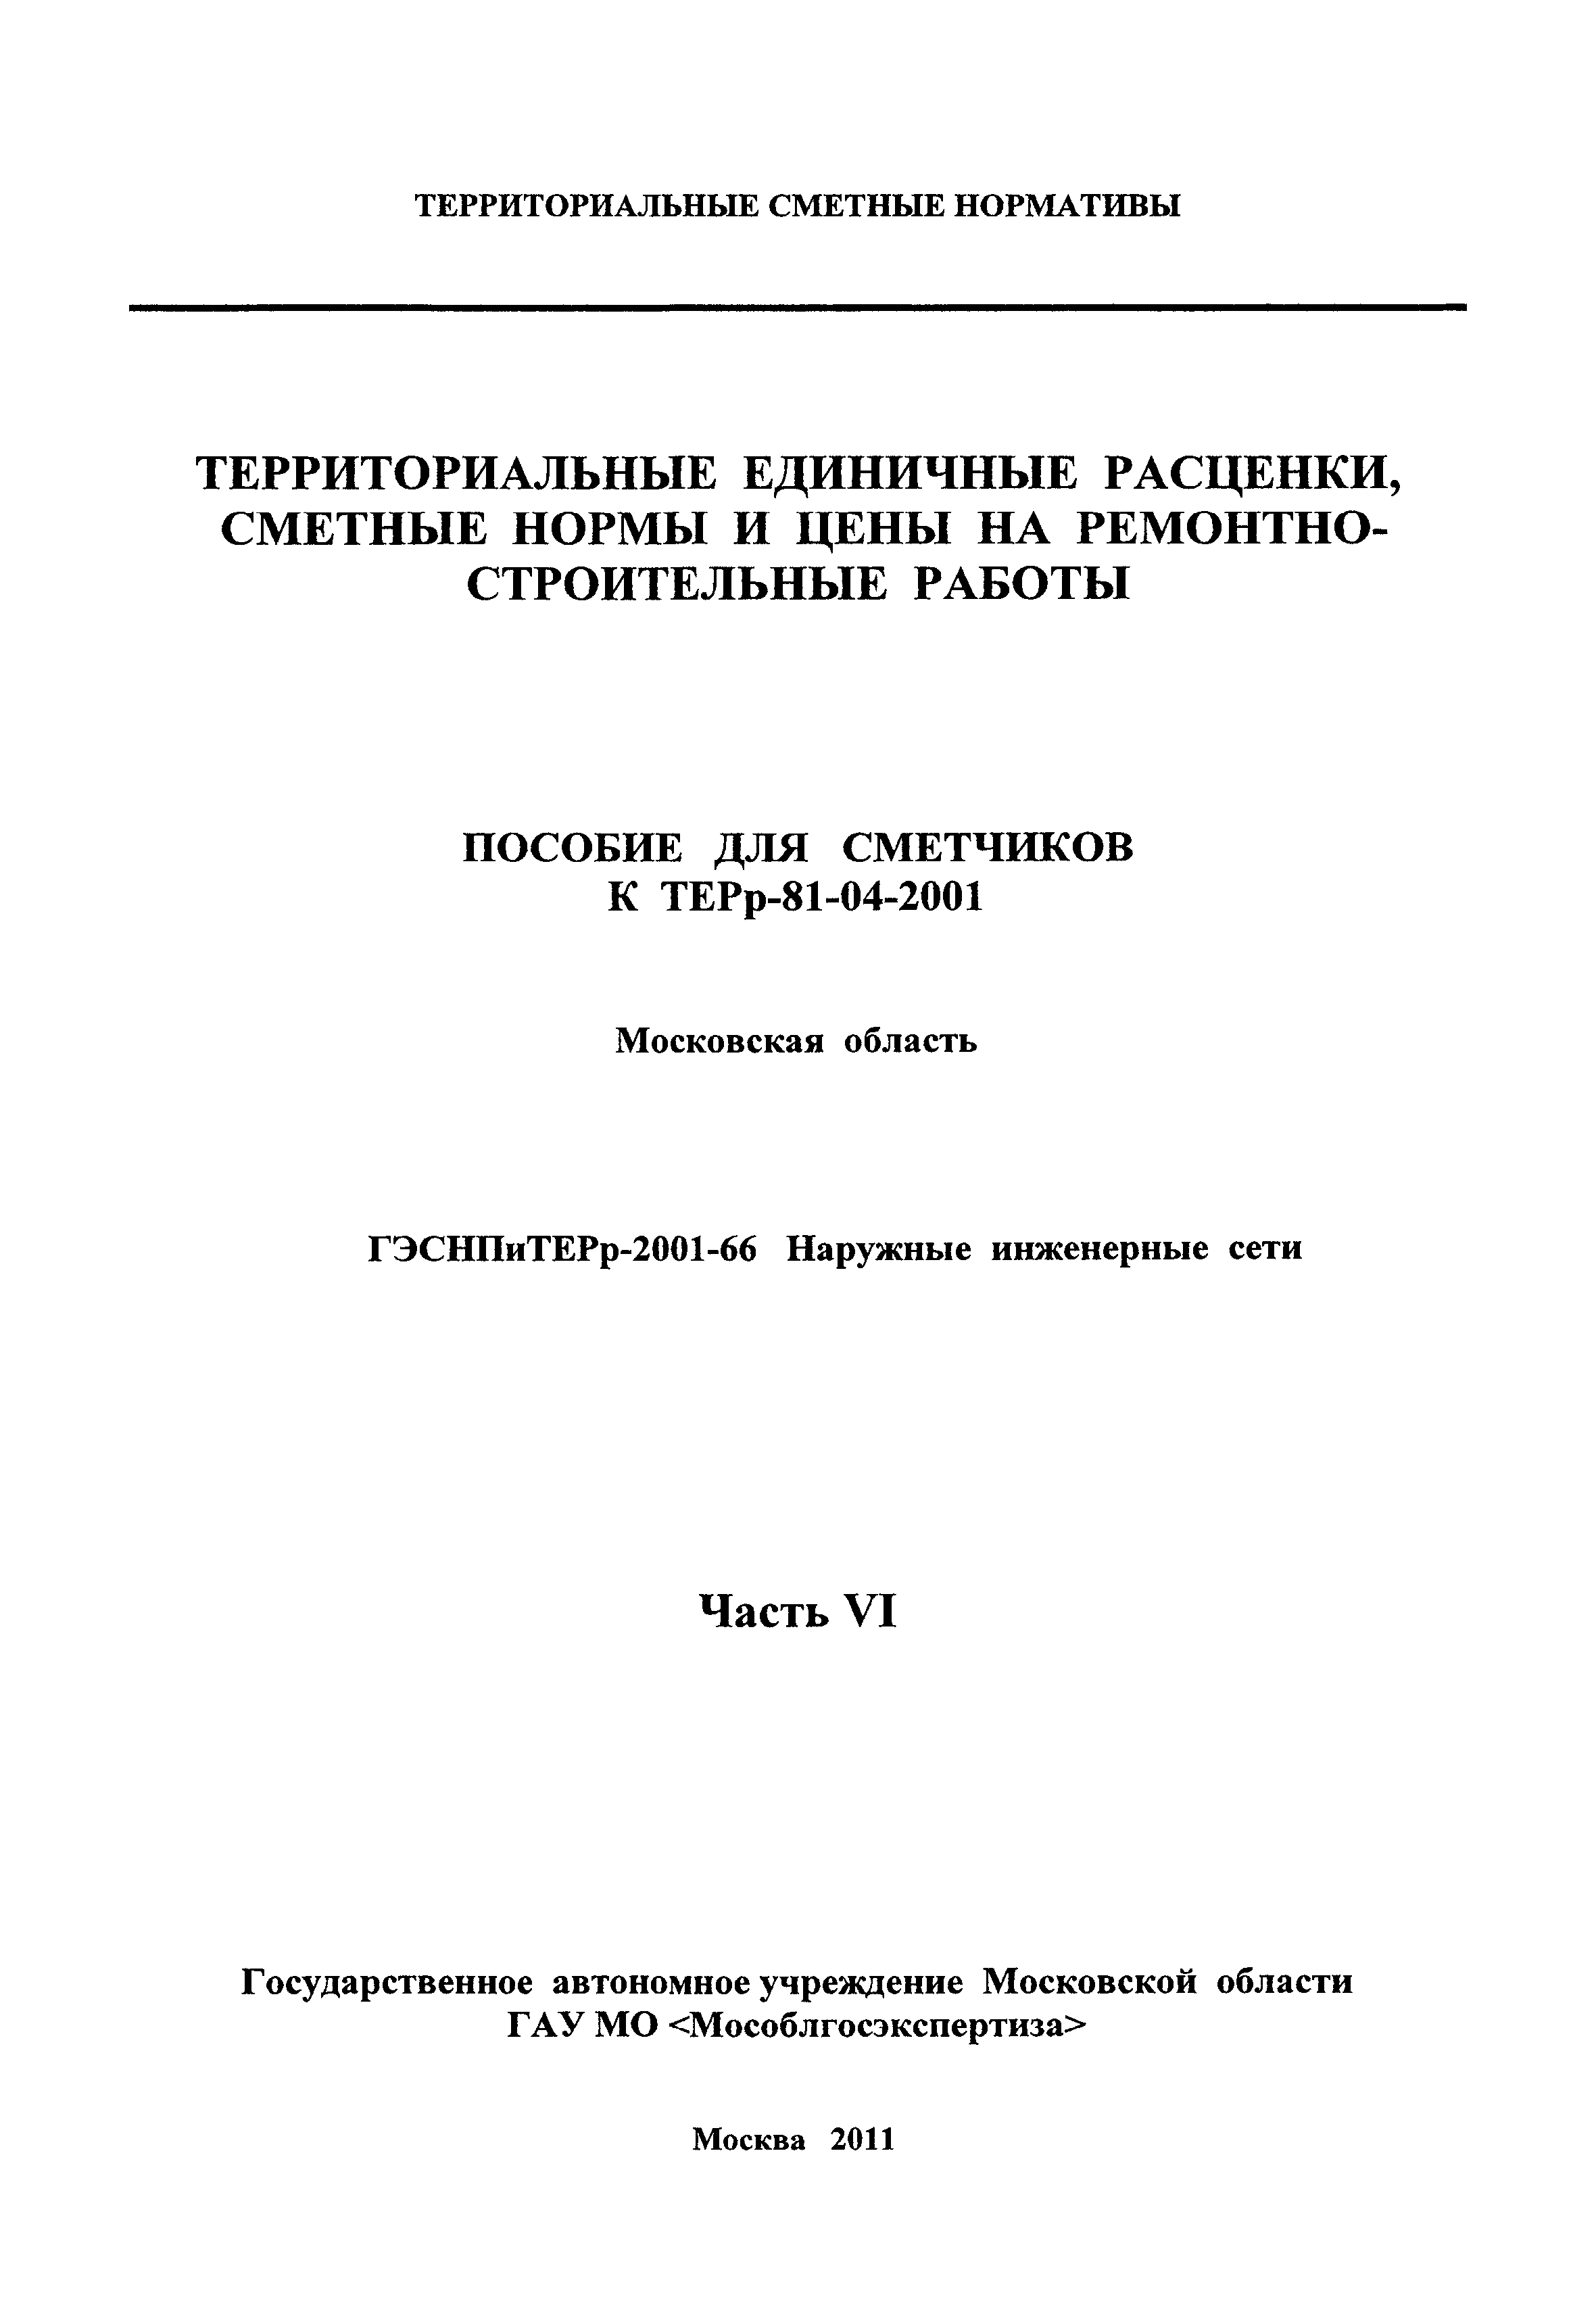 ГЭСНПиТЕРр 2001-66 Московской области